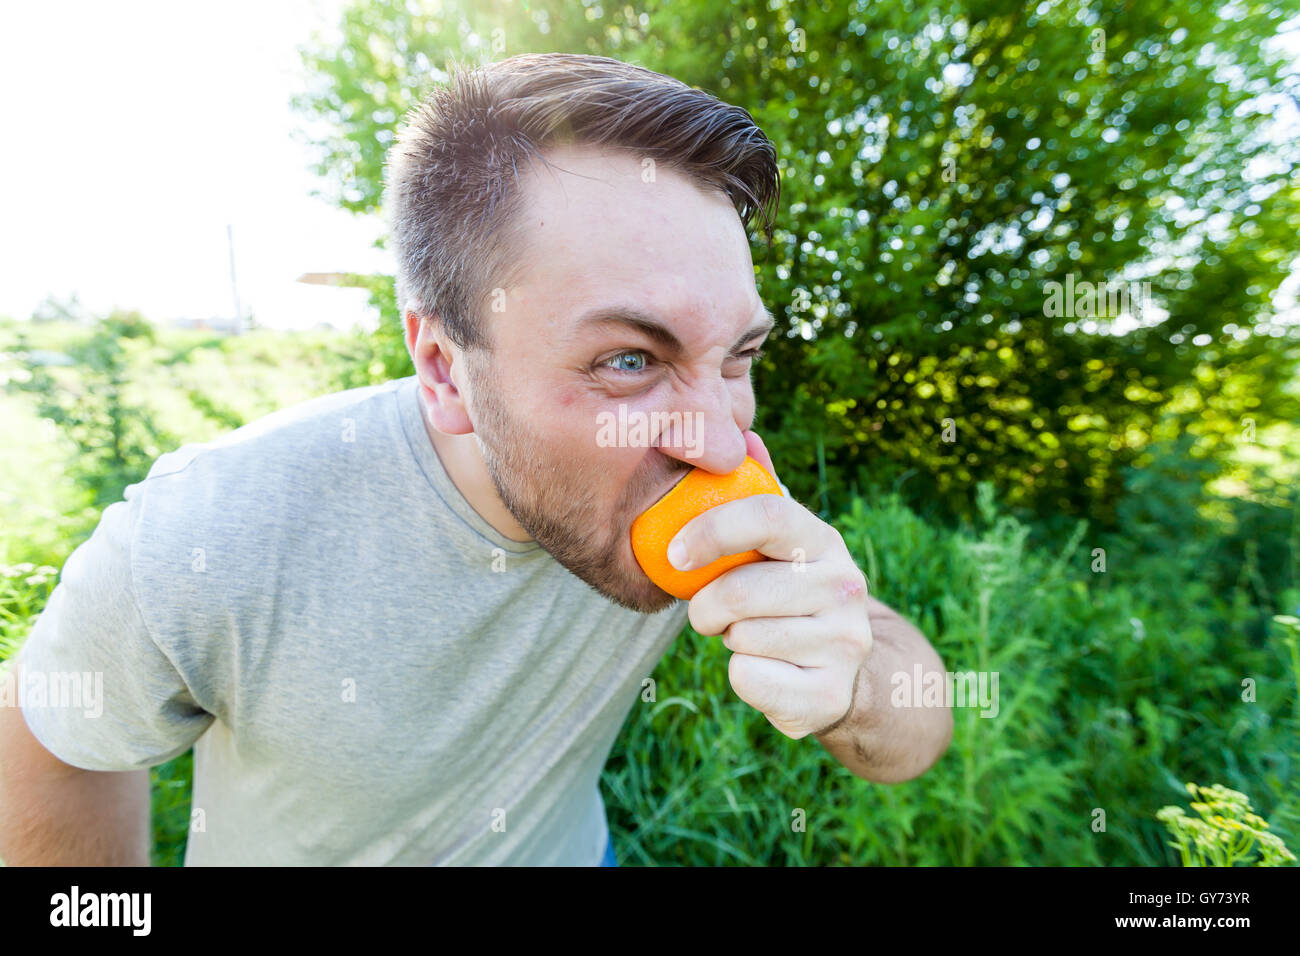 Man eating oranger Stock Photo